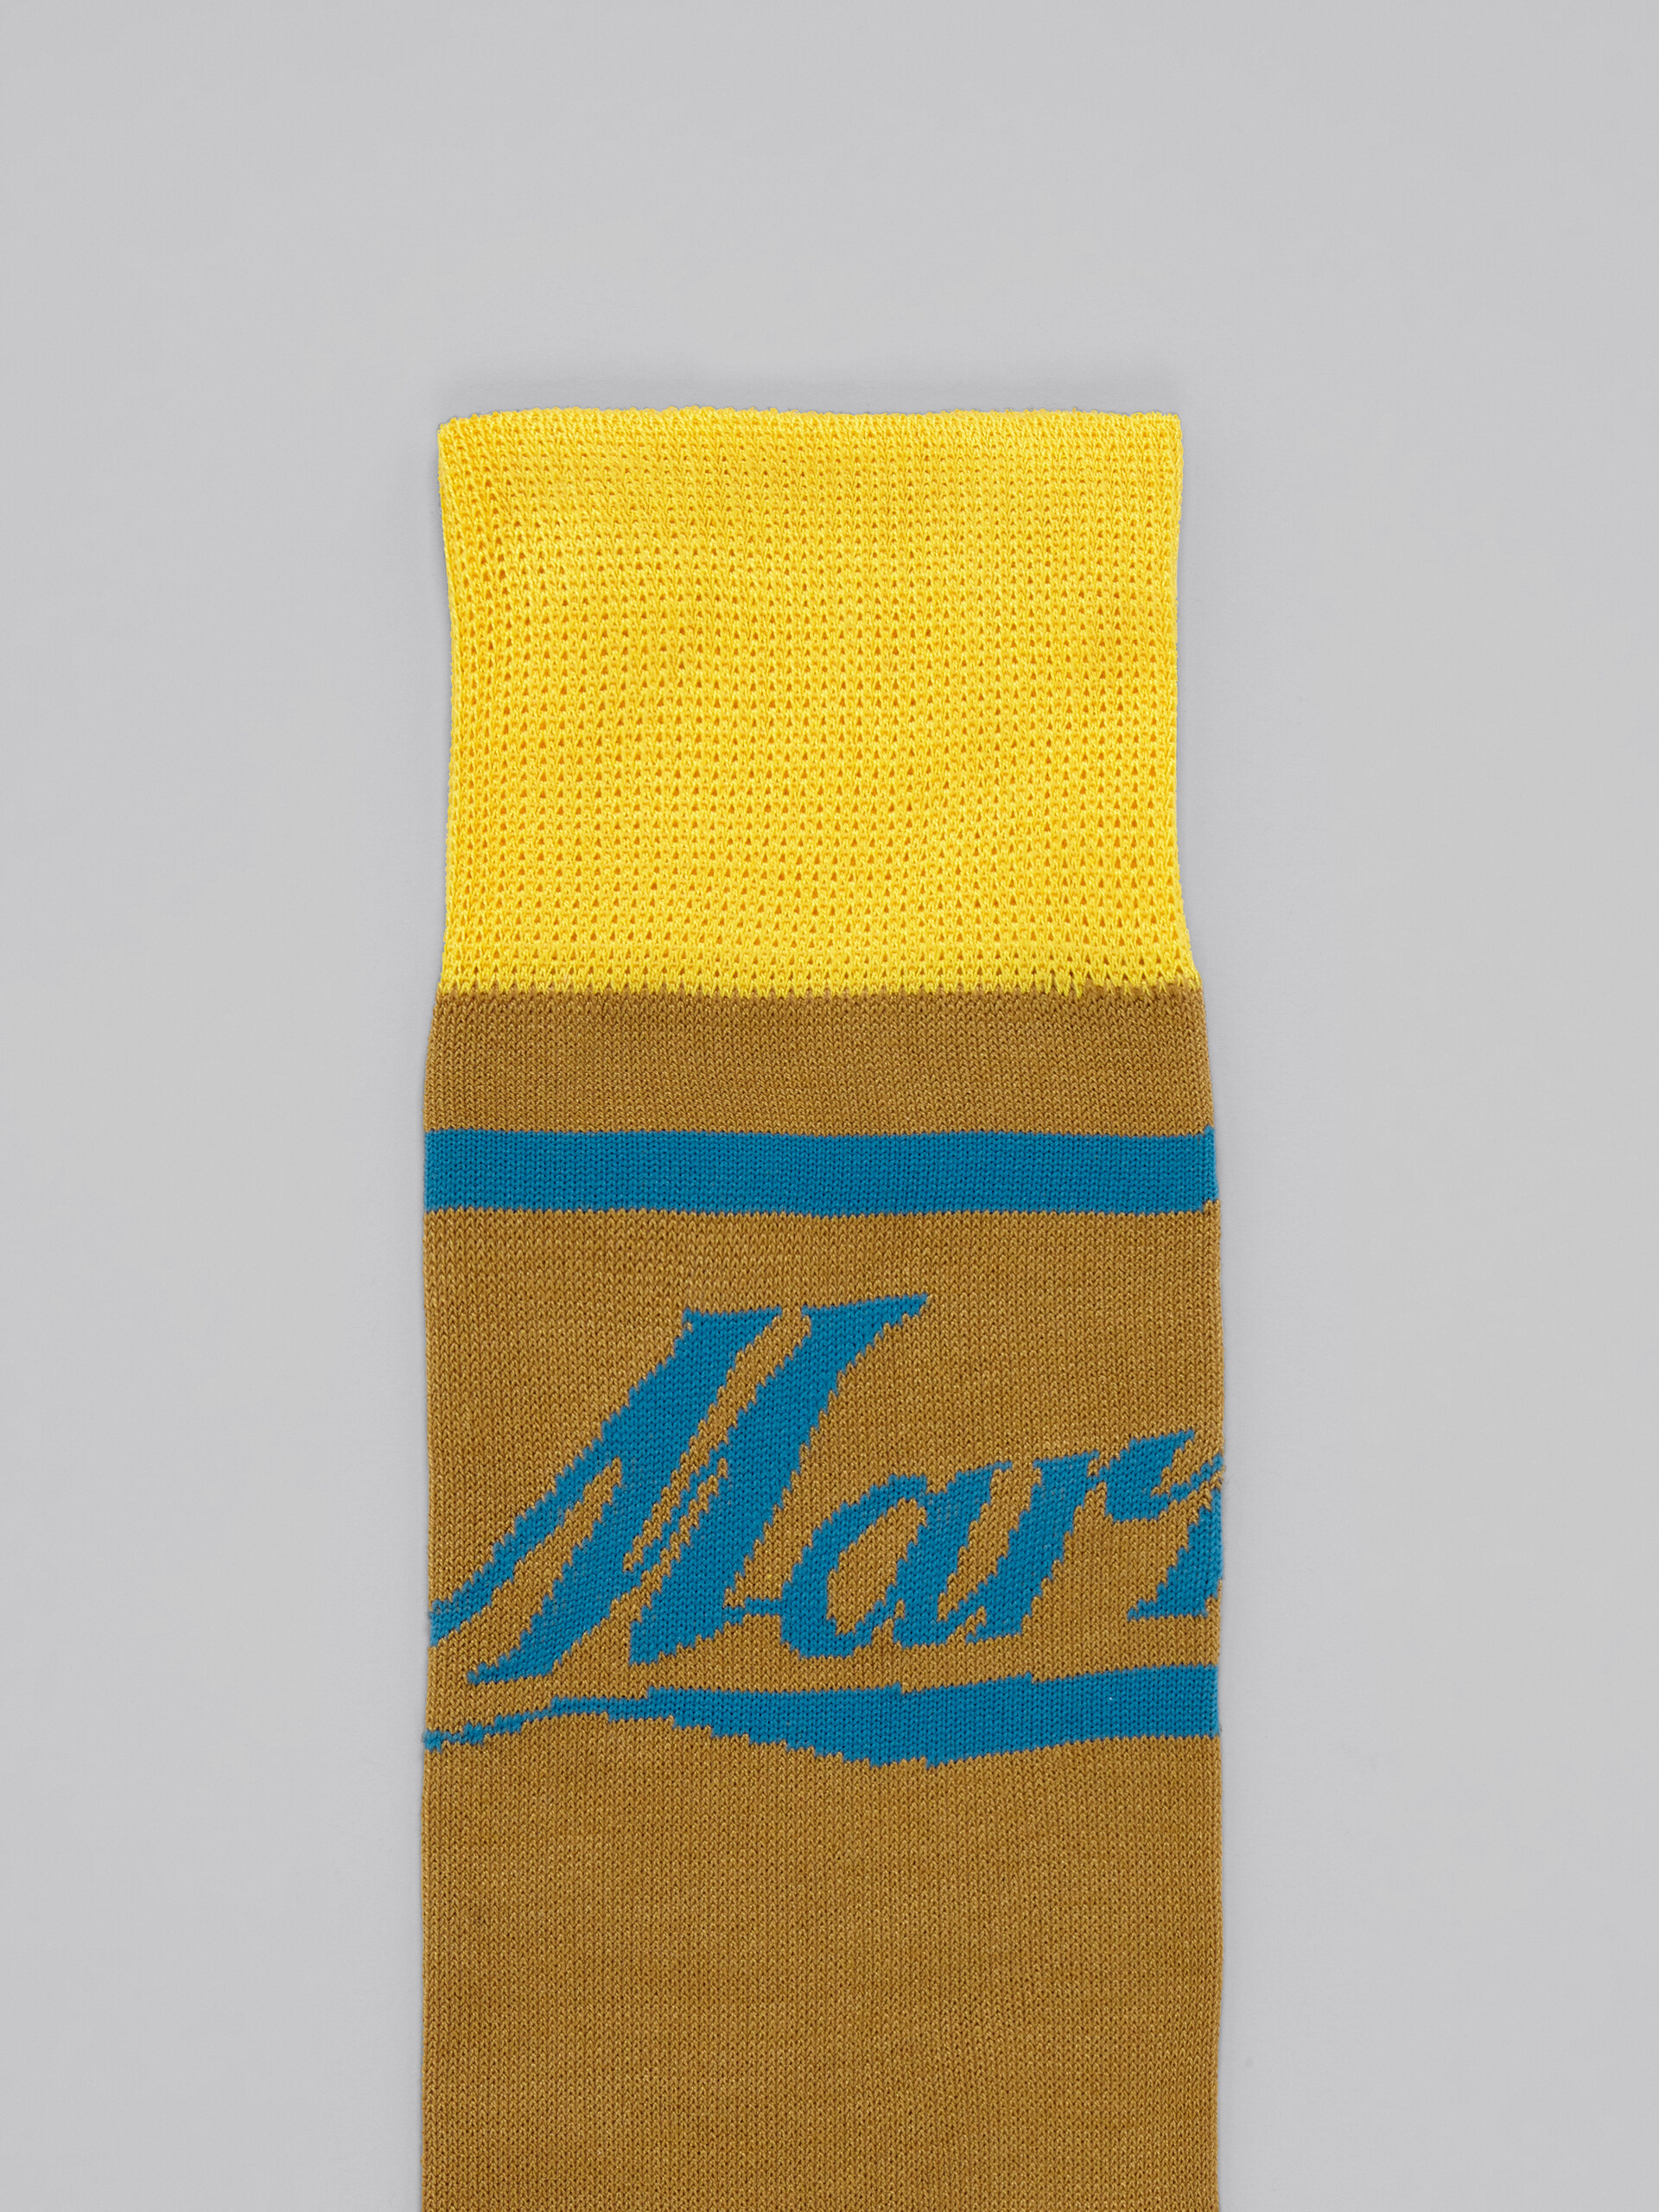 Brown and yellow socks with logo - Socks - Image 3